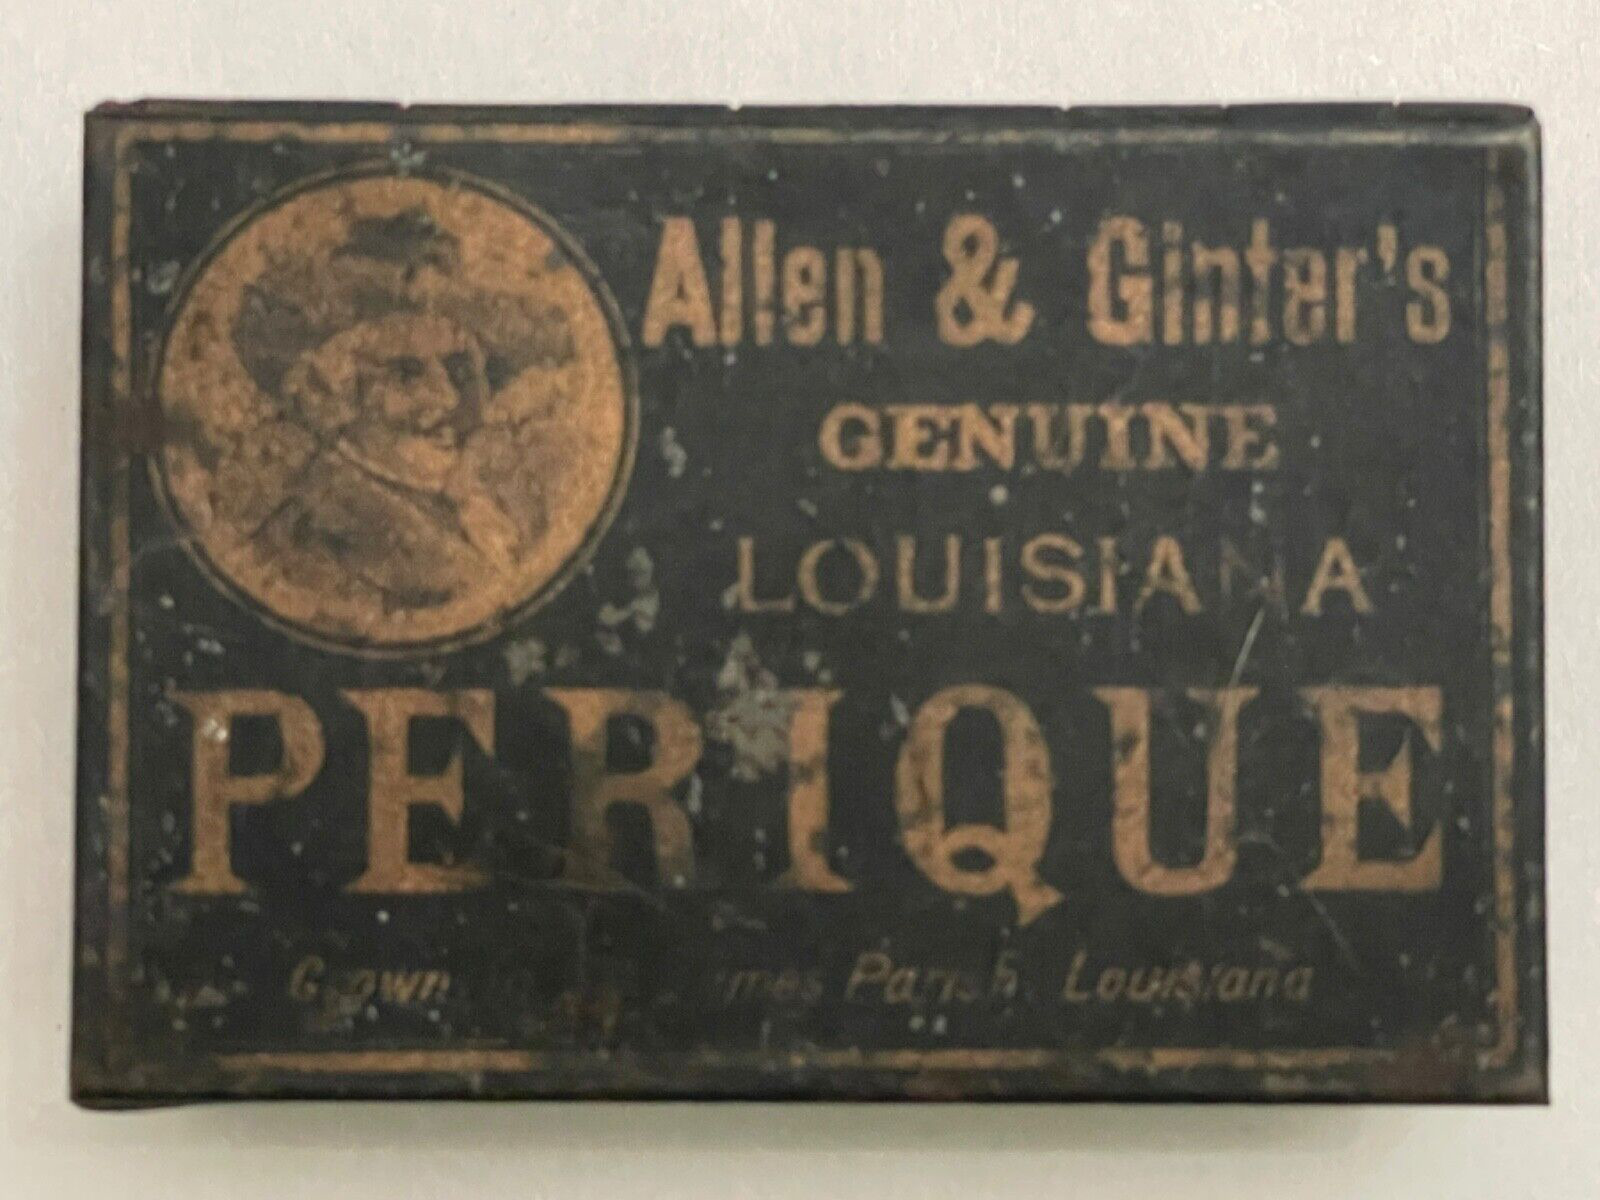 ANTIQUE ALLEN & GINTER'S LOUISIANA PERIQUE TOBACCO TIN - 1800s/Early 1900s